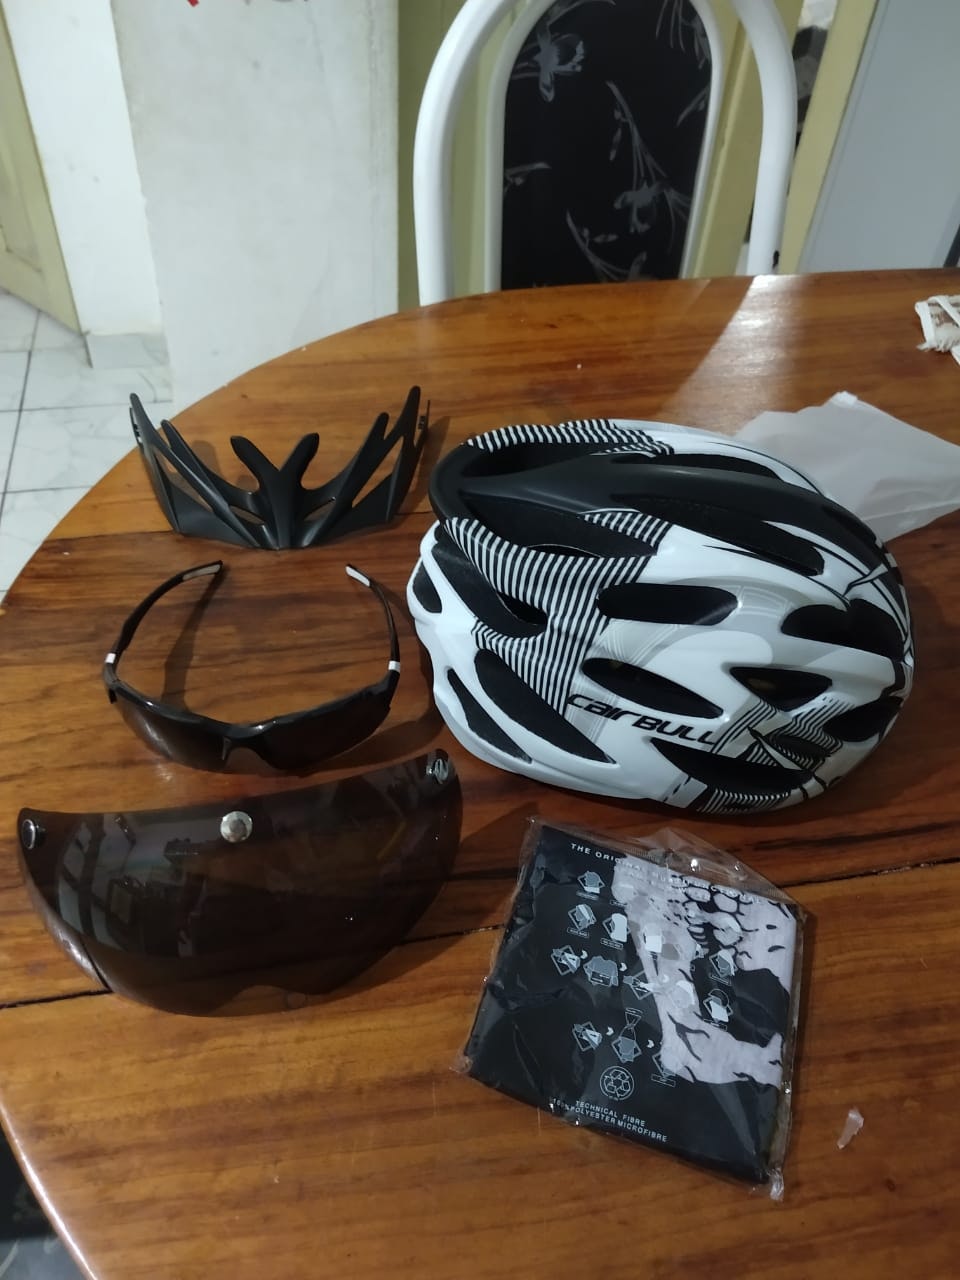 Cairbull cykelhjälm med visir+solglasögon+halsduk